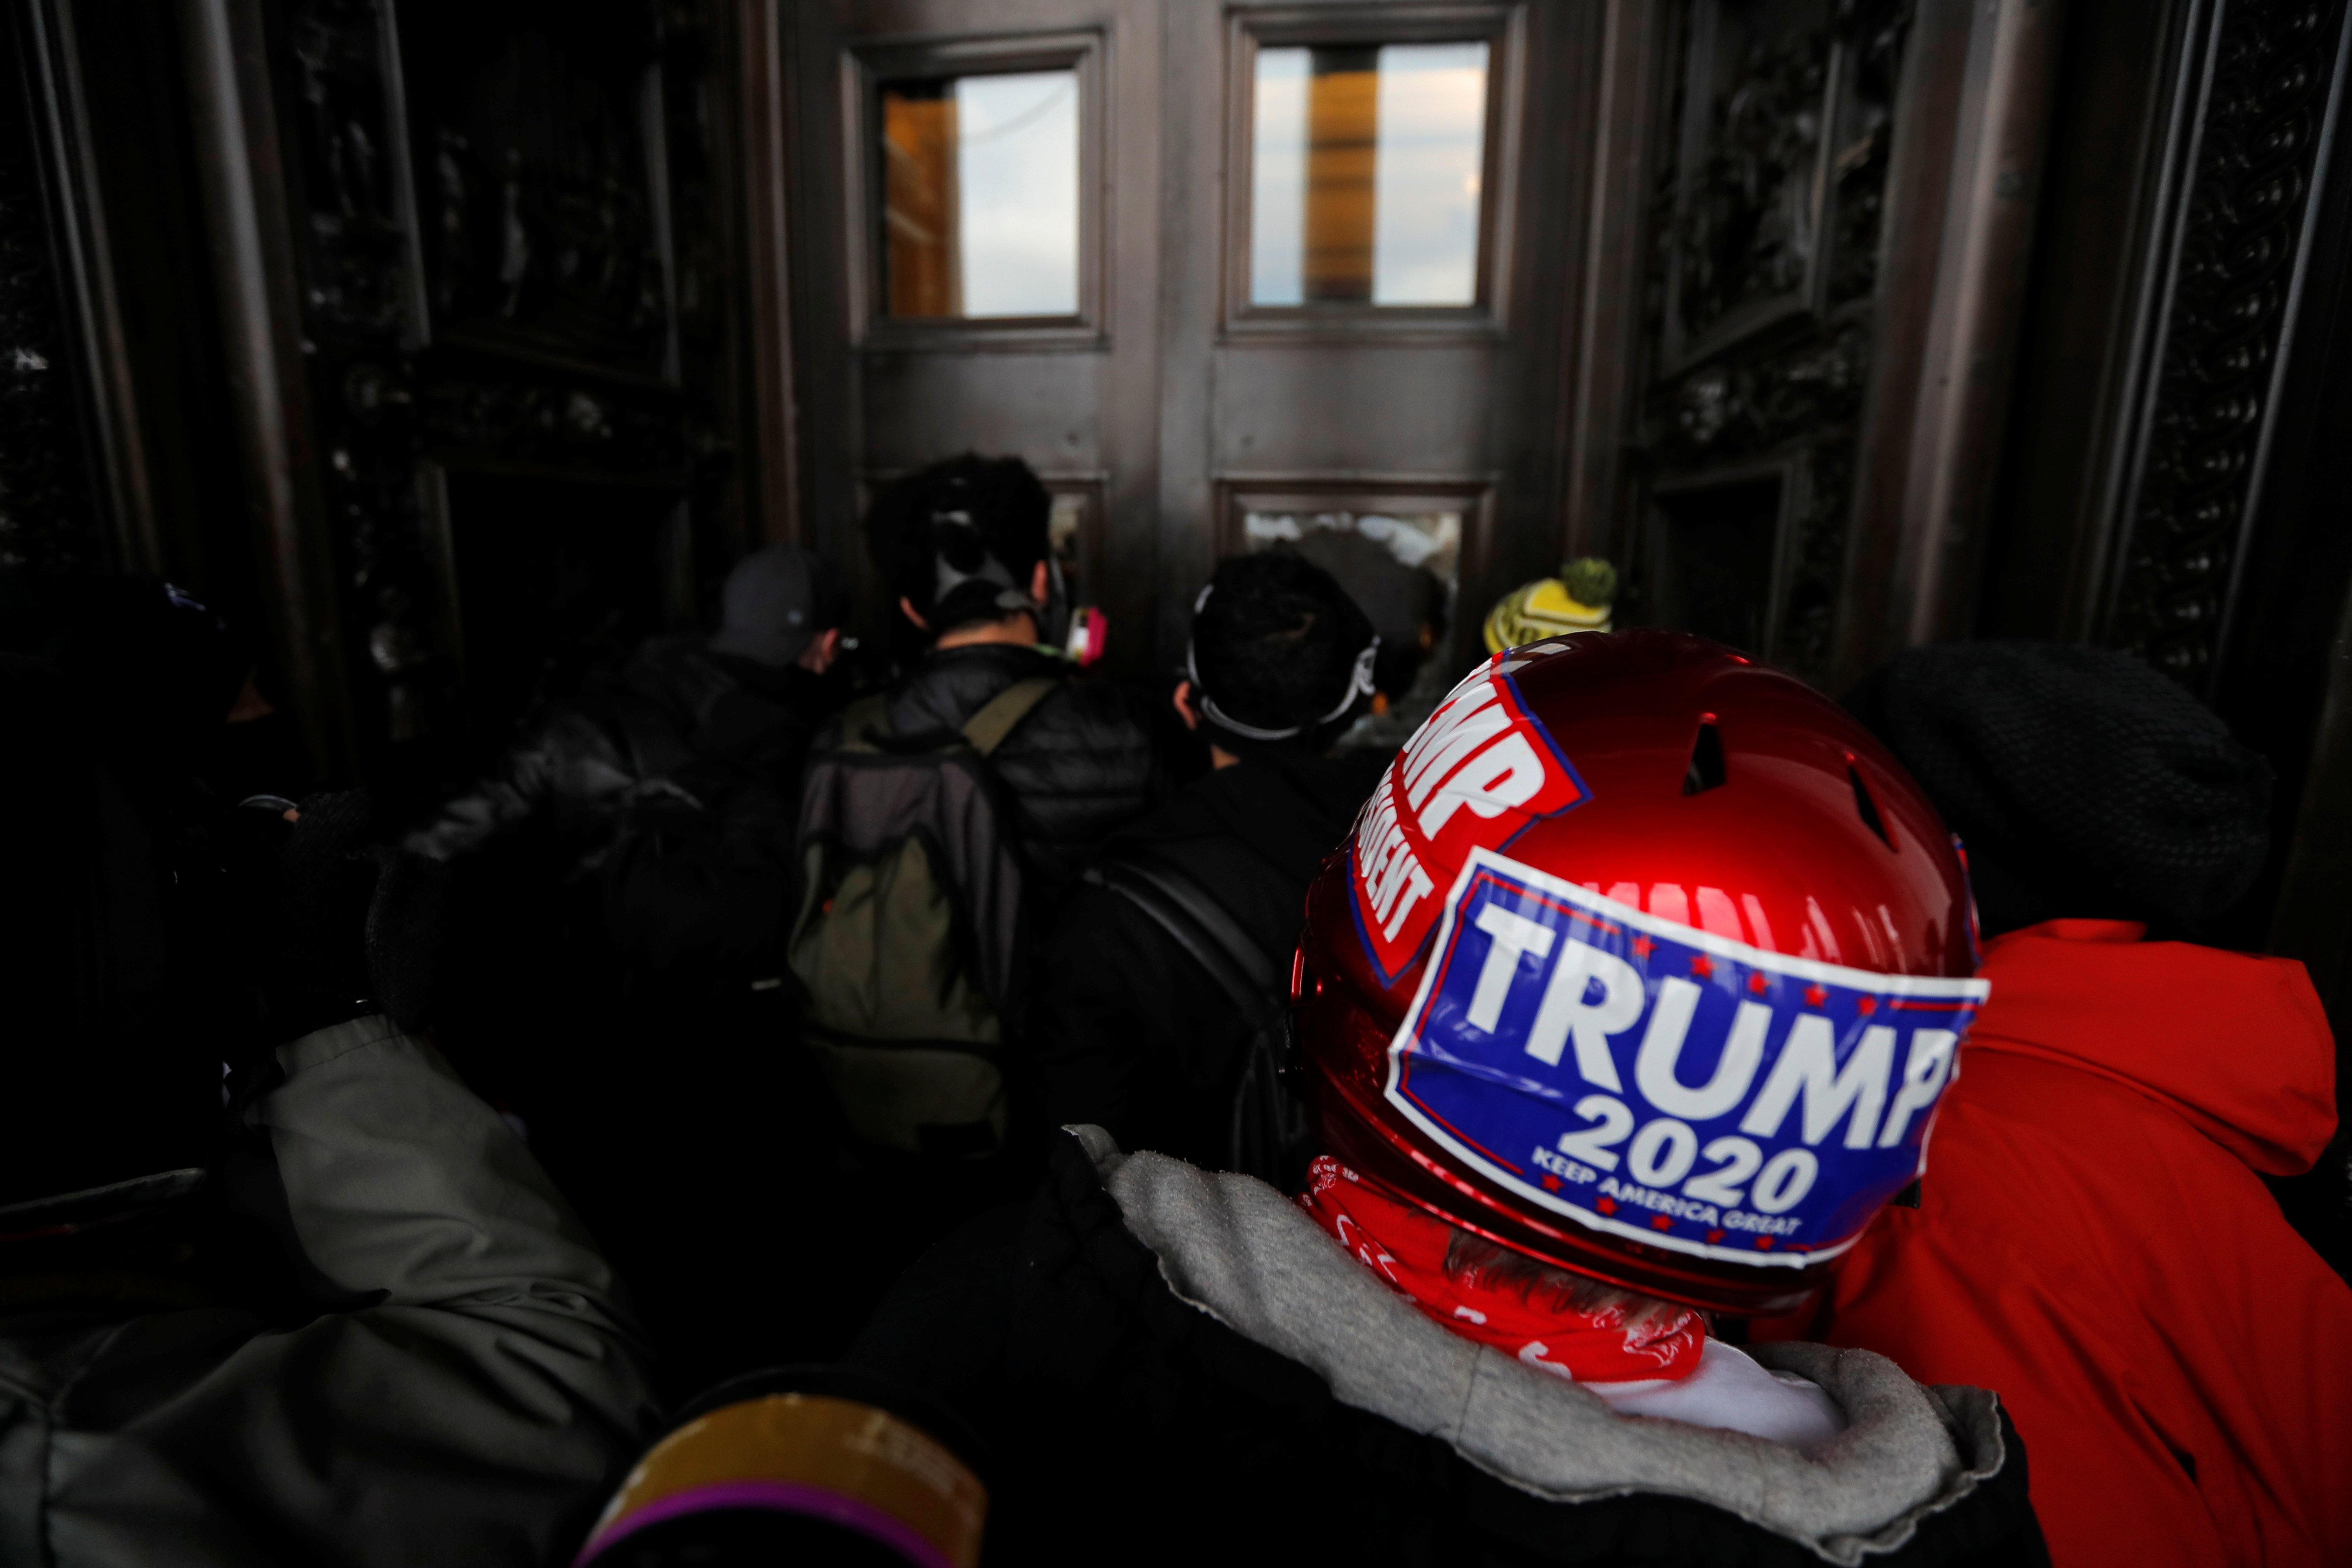 Apoiadores do presidente dos EUA, Donald Trump, tentam entrar no Capitólio dos EUA durante um protesto contra a certificação dos resultados da eleição presidencial dos EUA de 2020 pelo Congresso dos EUA, em Washington, EUA, 6 de janeiro de 2021